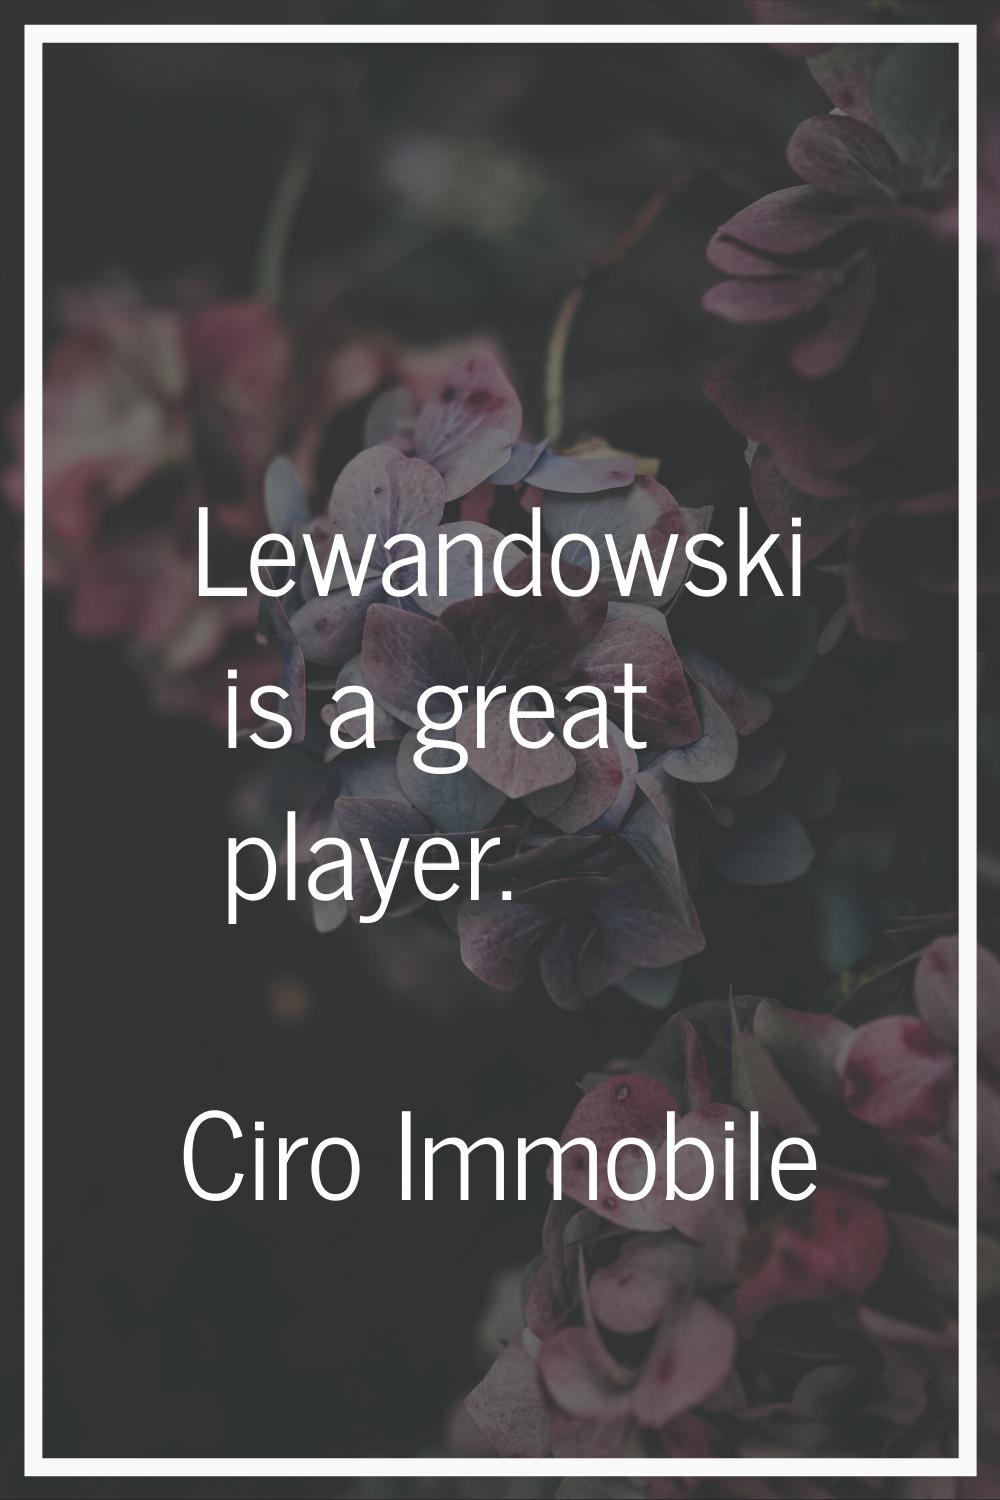 Lewandowski is a great player.